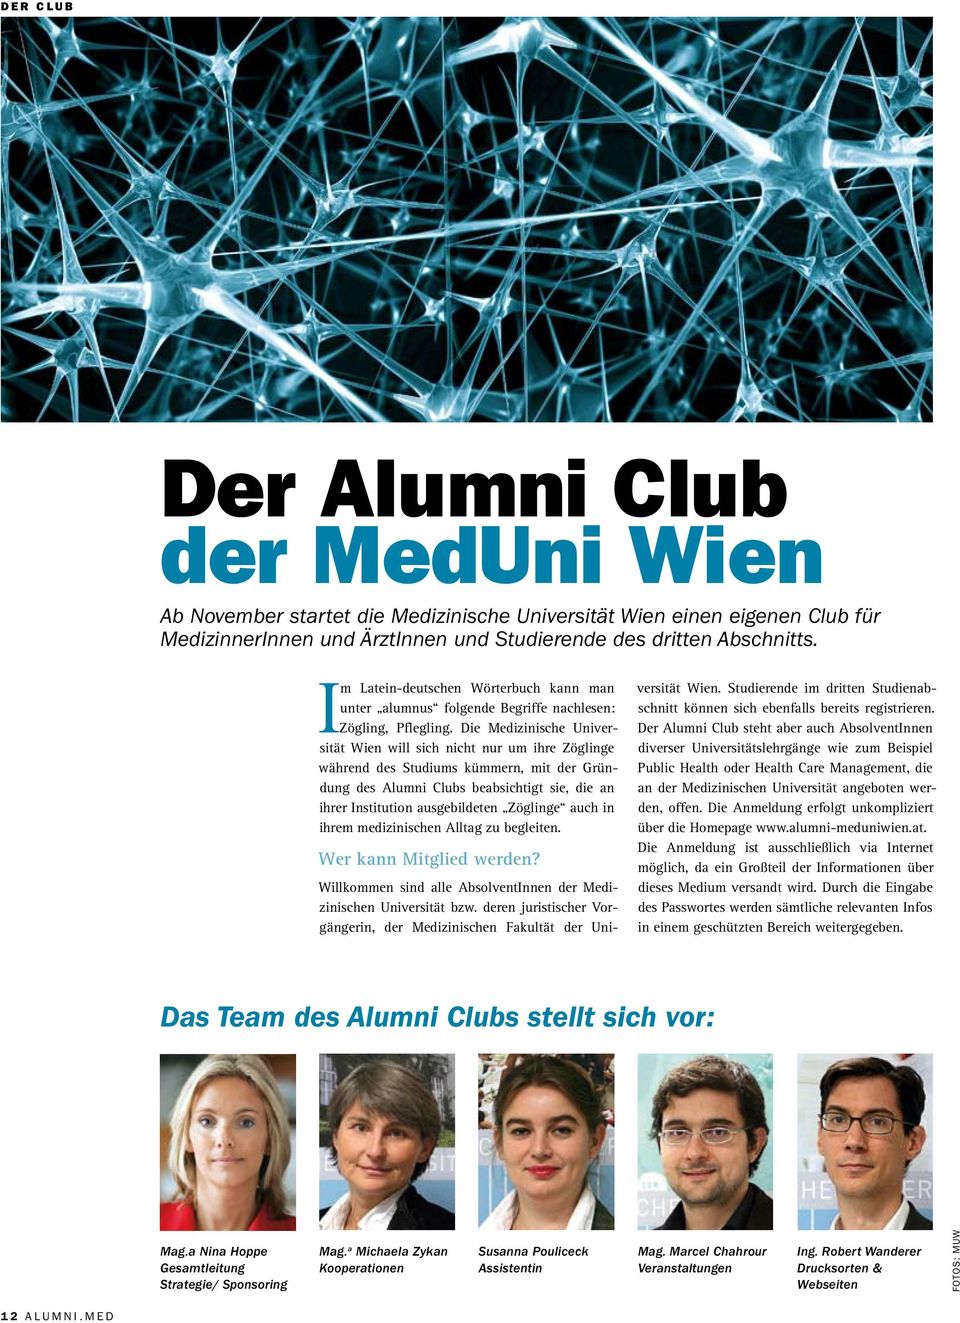 Die Medizinische Universität Wien will sich nicht nur um ihre Zöglinge während des Studiums kümmern, mit der Gründung des Alumni Clubs beabsichtigt sie, die an ihrer Institution ausgebildeten